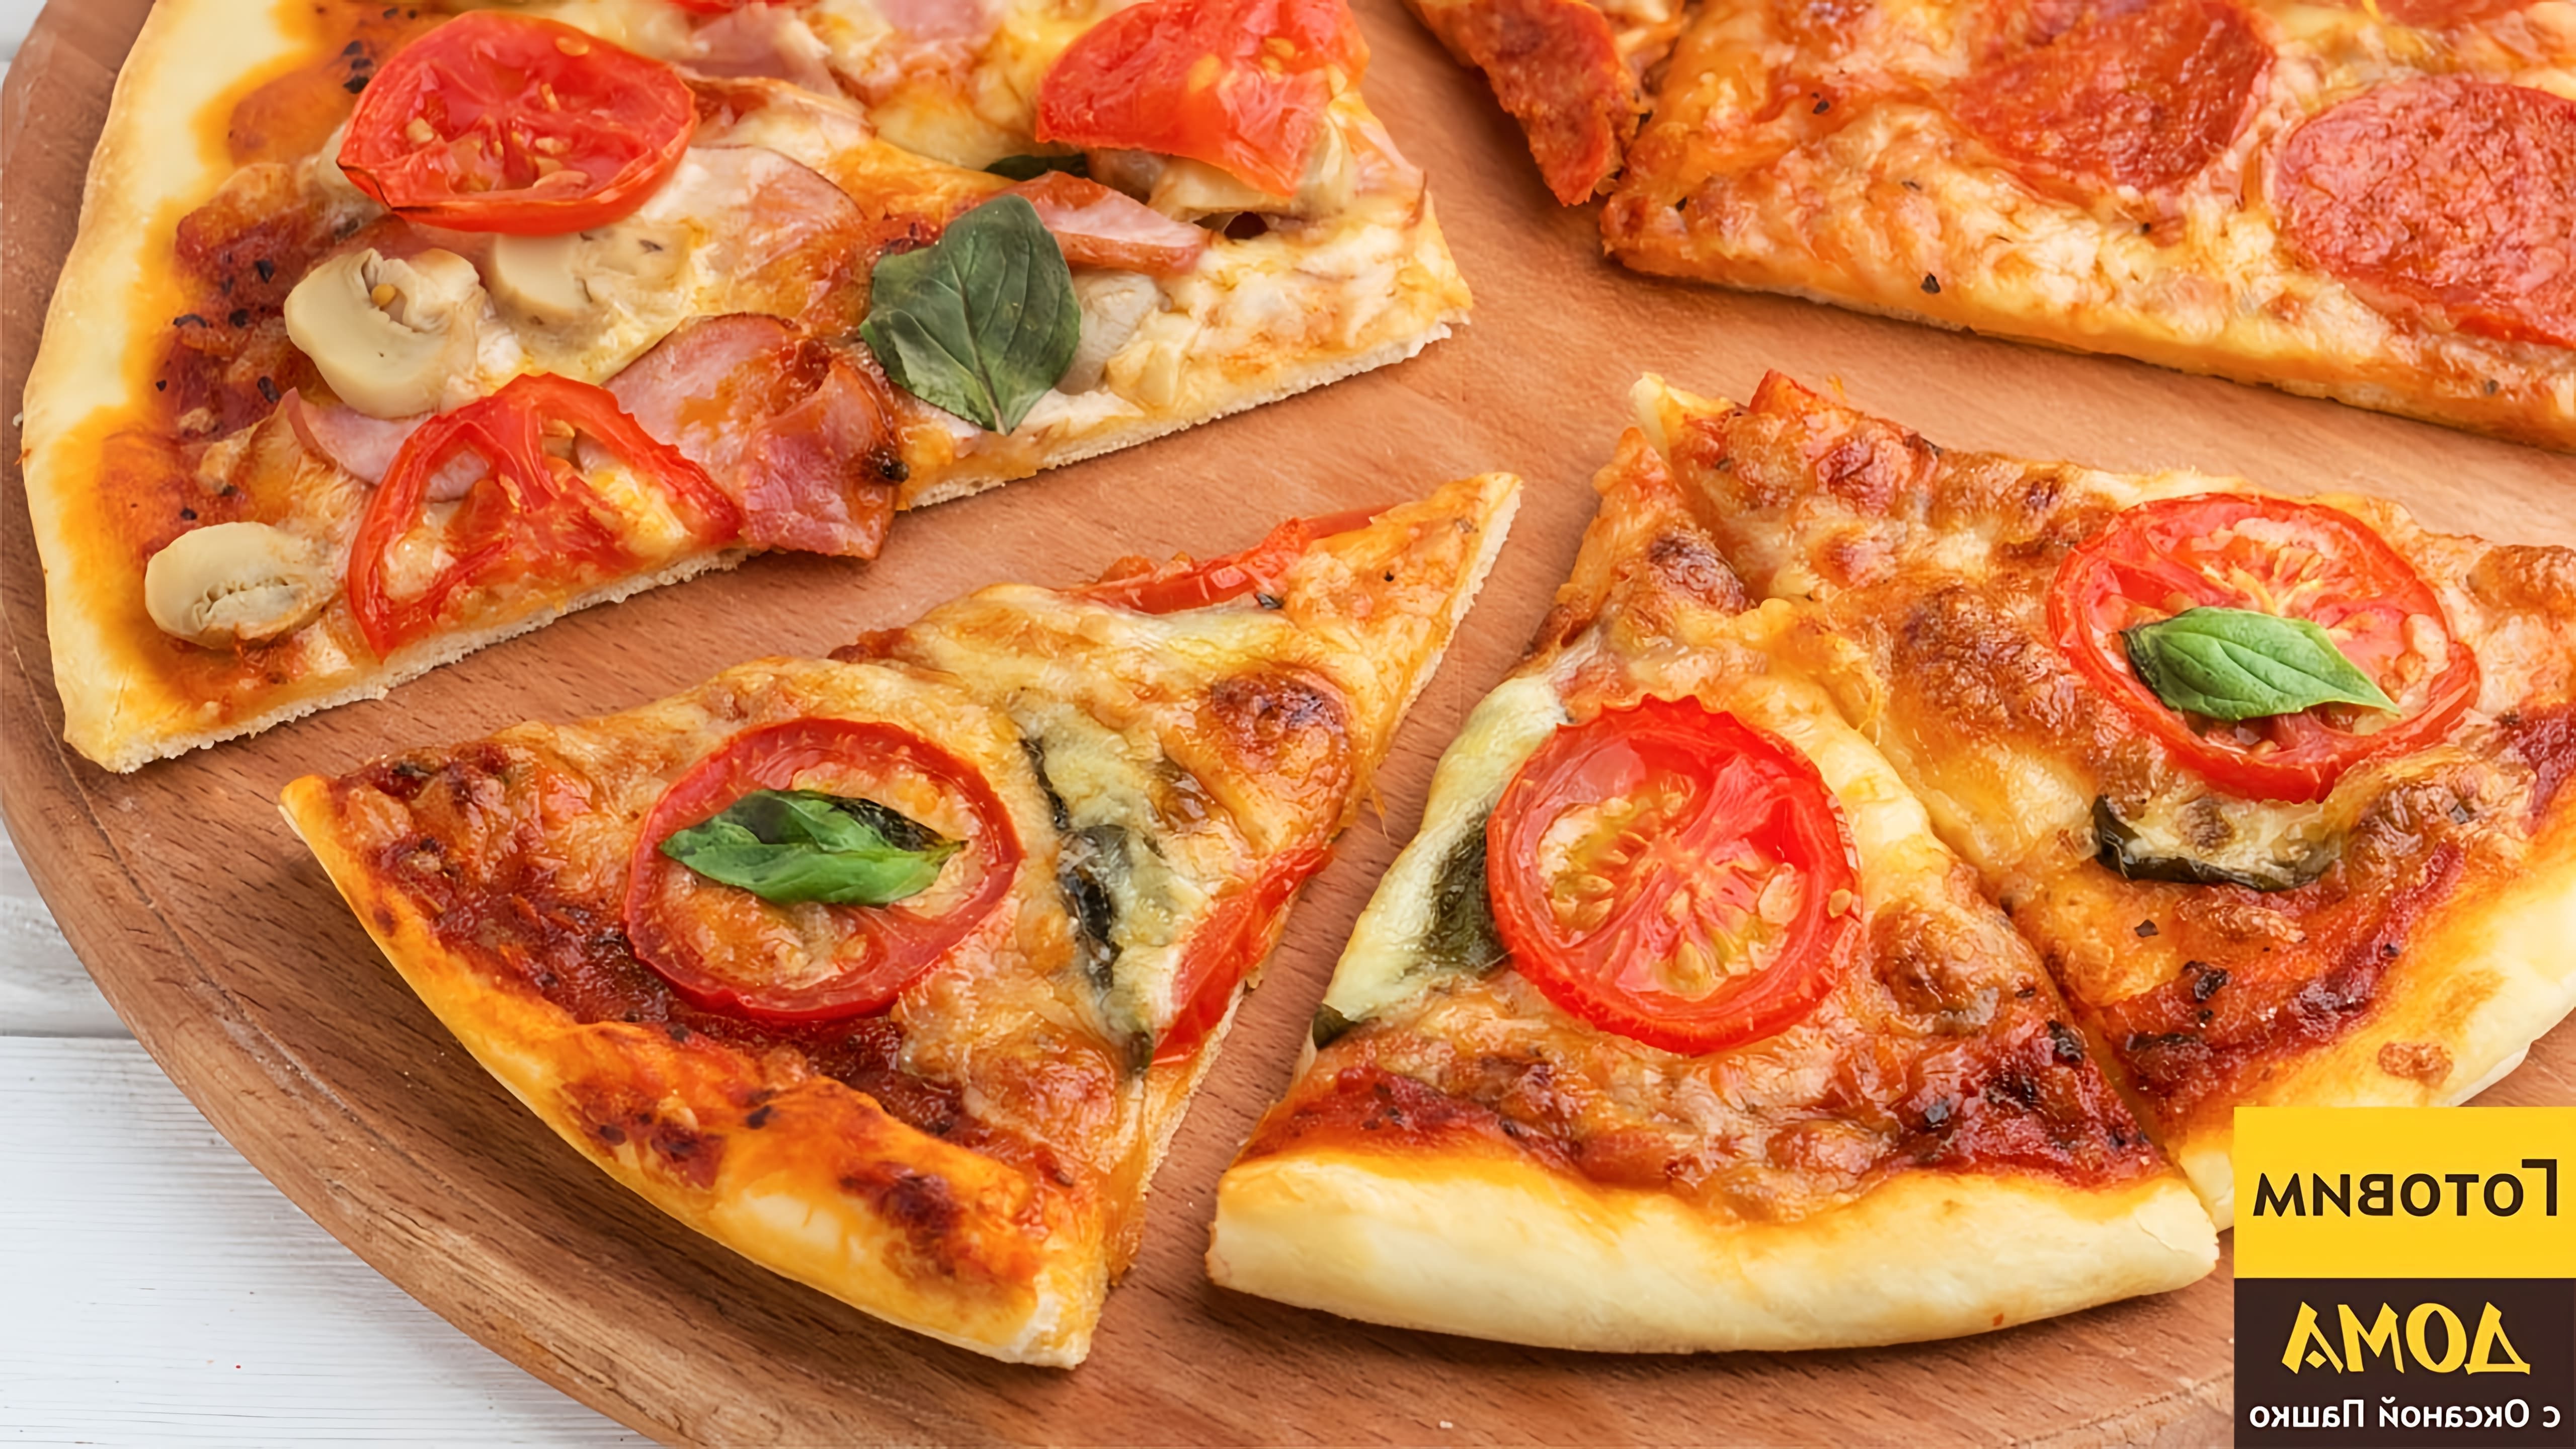 В этом видео демонстрируется процесс приготовления трех видов пиццы: тонкой пиццы с тремя разными начинками, пиццы "Маргарита" и пиццы "Пеперони"